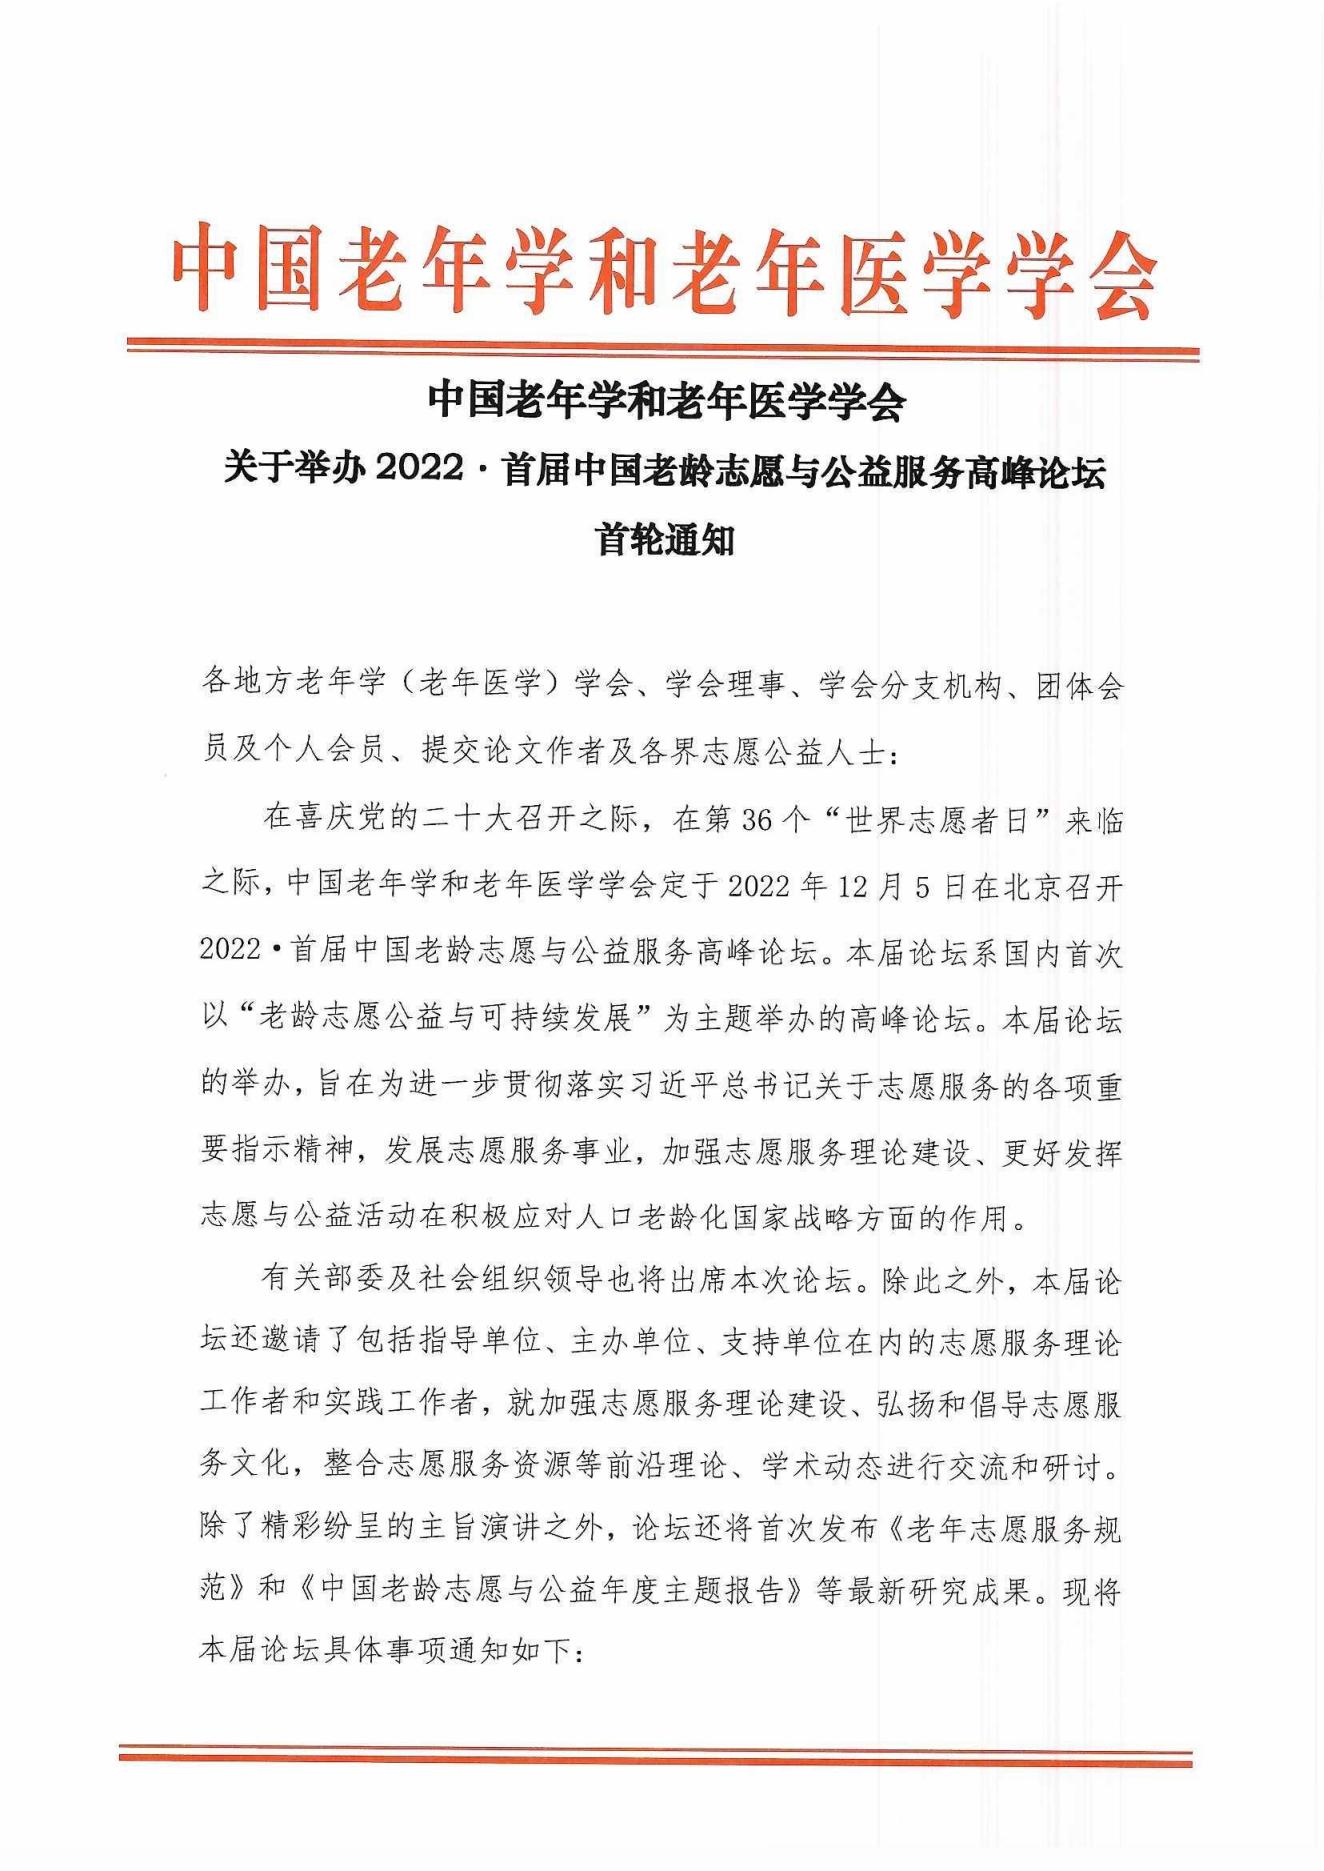 2022首届中国老龄志愿与公益服务高峰论坛首轮通知(1)_00.jpg